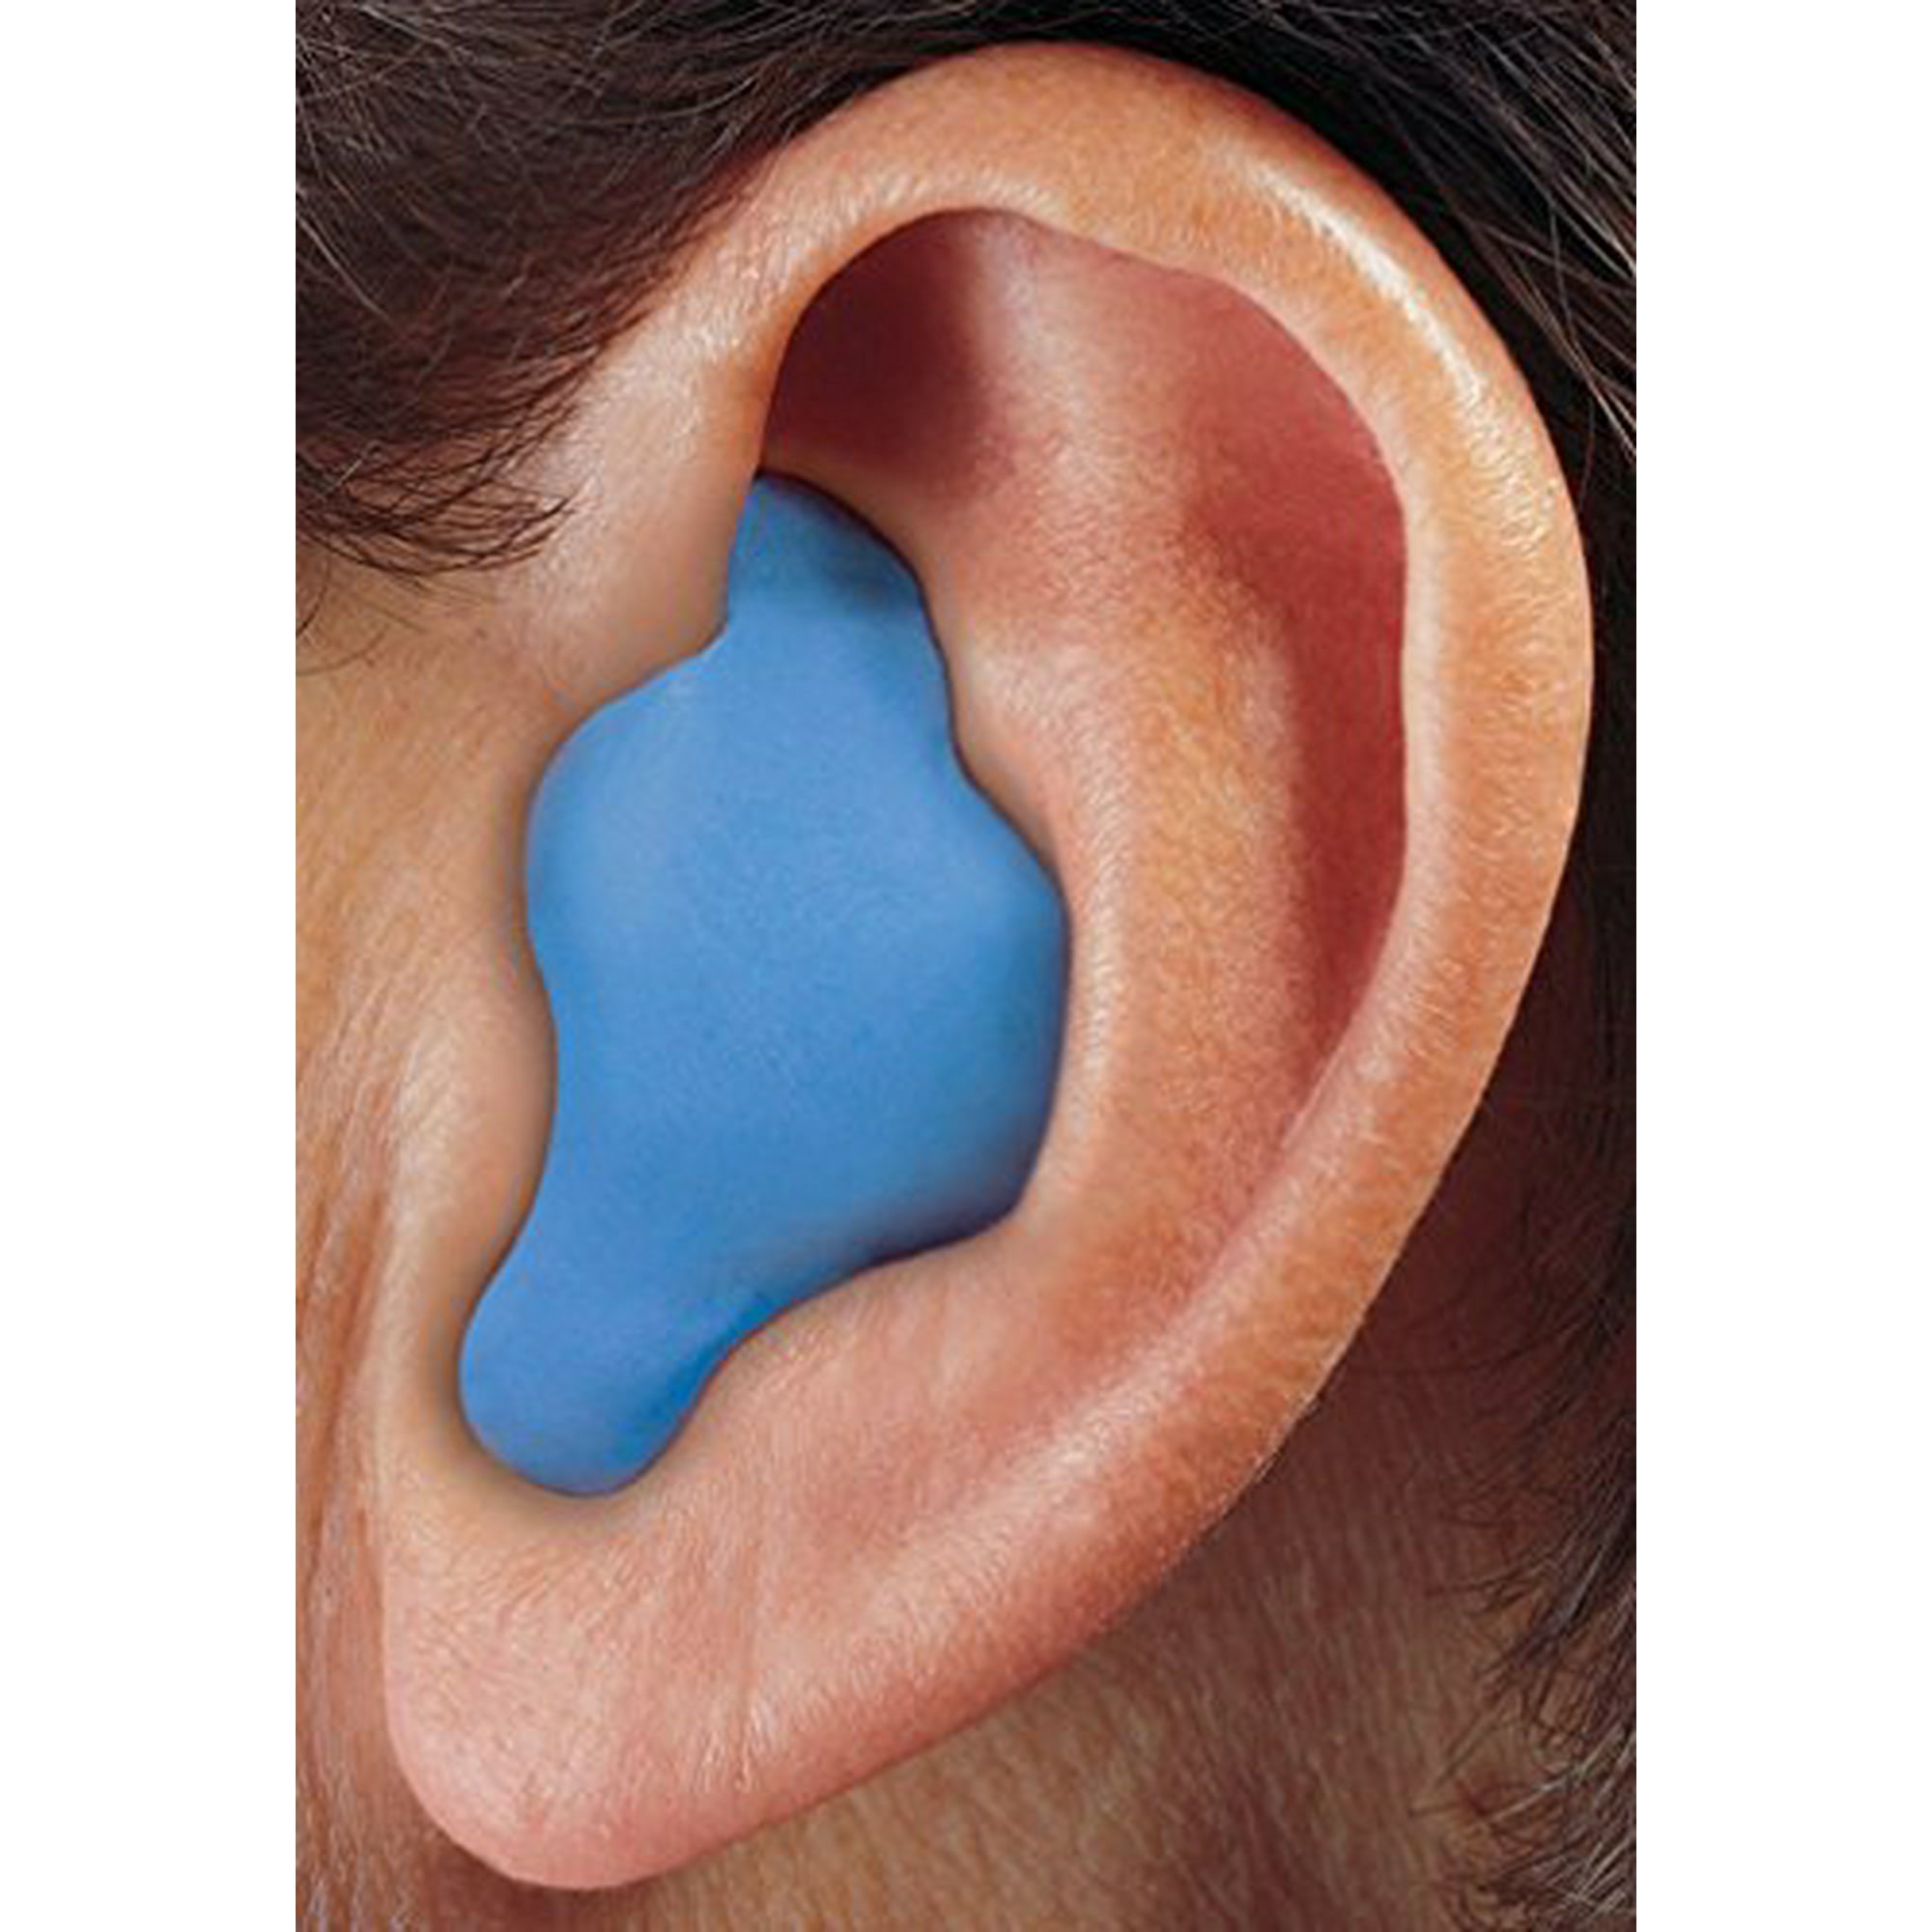 TYMPO bouchons d'oreille moulés sur mesure Bleu. 1 Kit pour réaliser  soi-même 2 paires de boule quies sur mesure en silicone. Bouchons d'oreille  pour dormir, pour l'avion et le bricolage : 